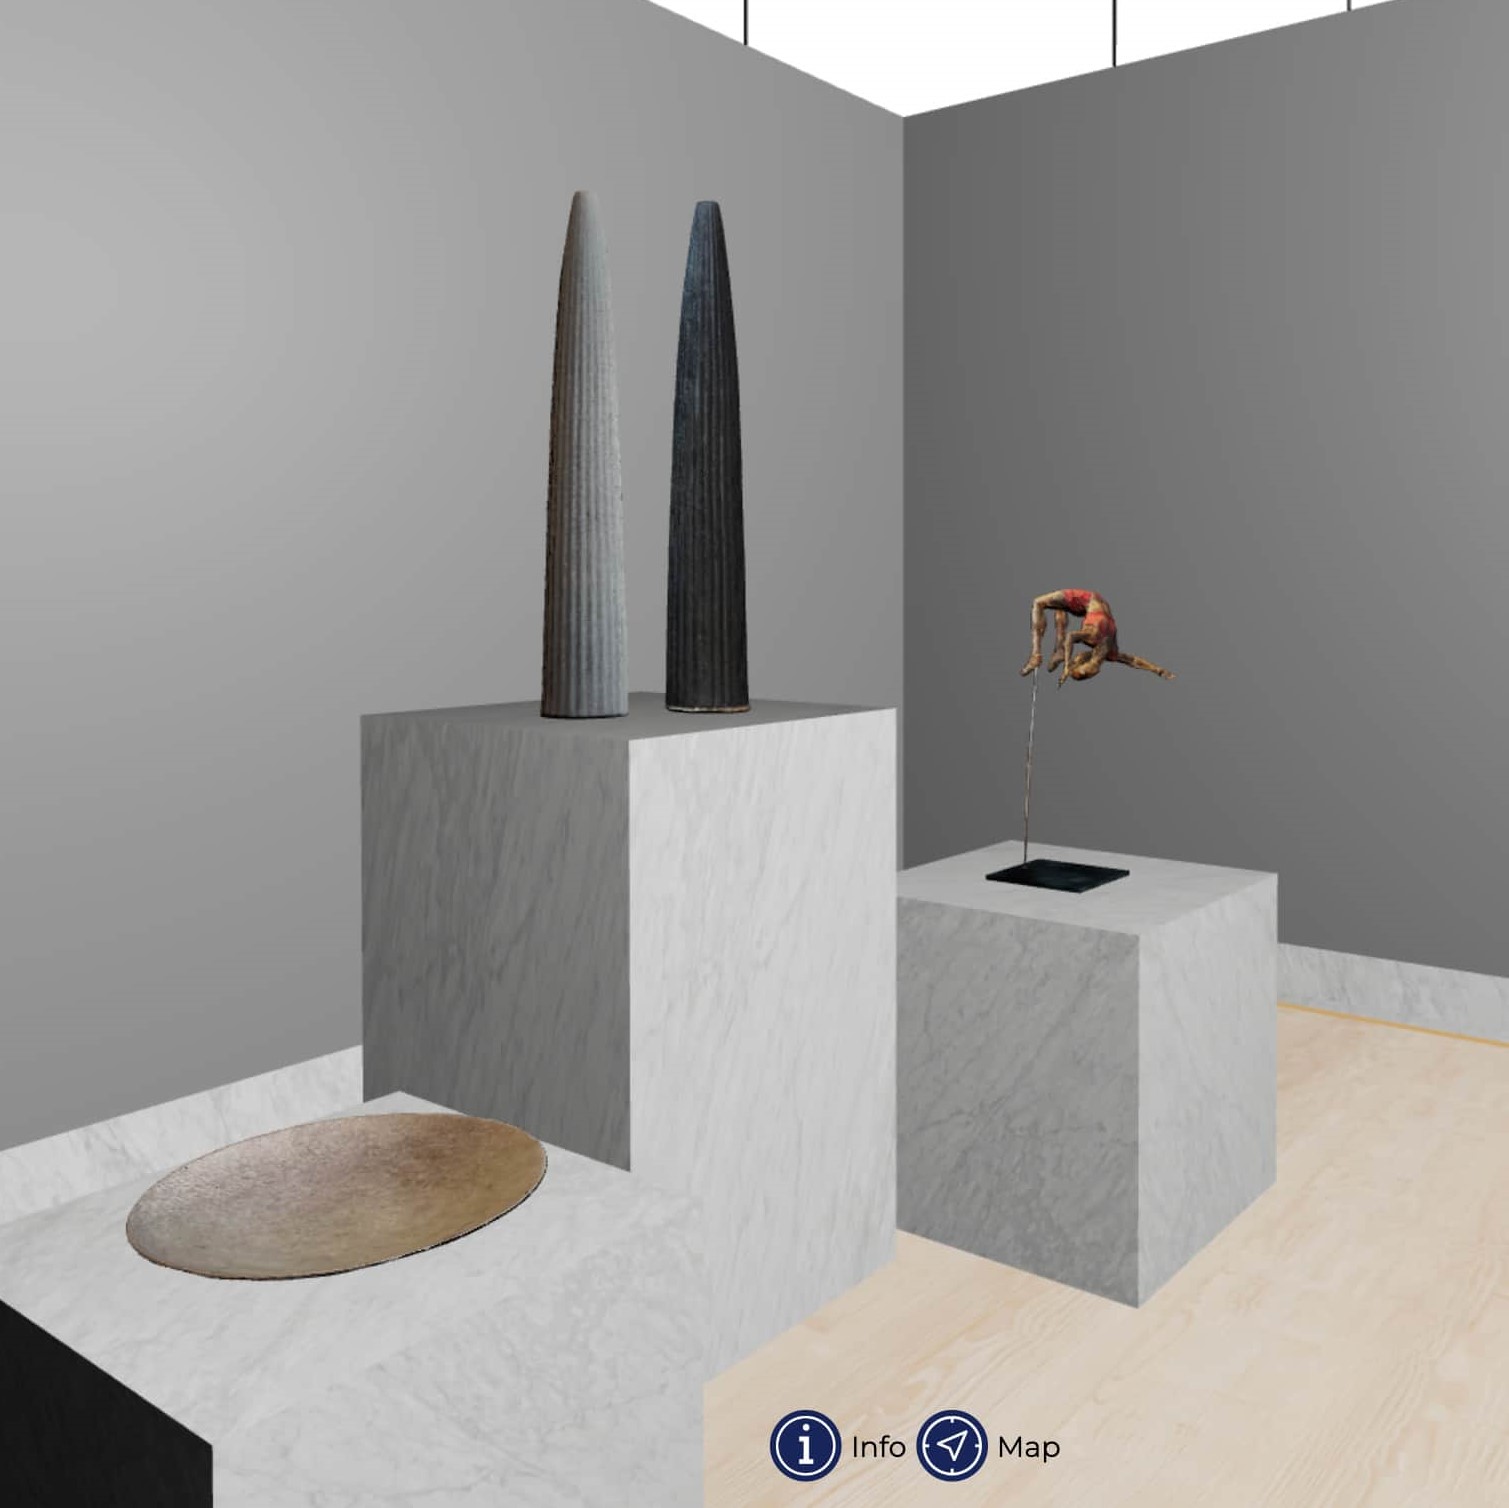 Sala di un museo virtuale, contenente le fotogrammetrie di un piatto, due vasi, e una piccola scultura bronzea